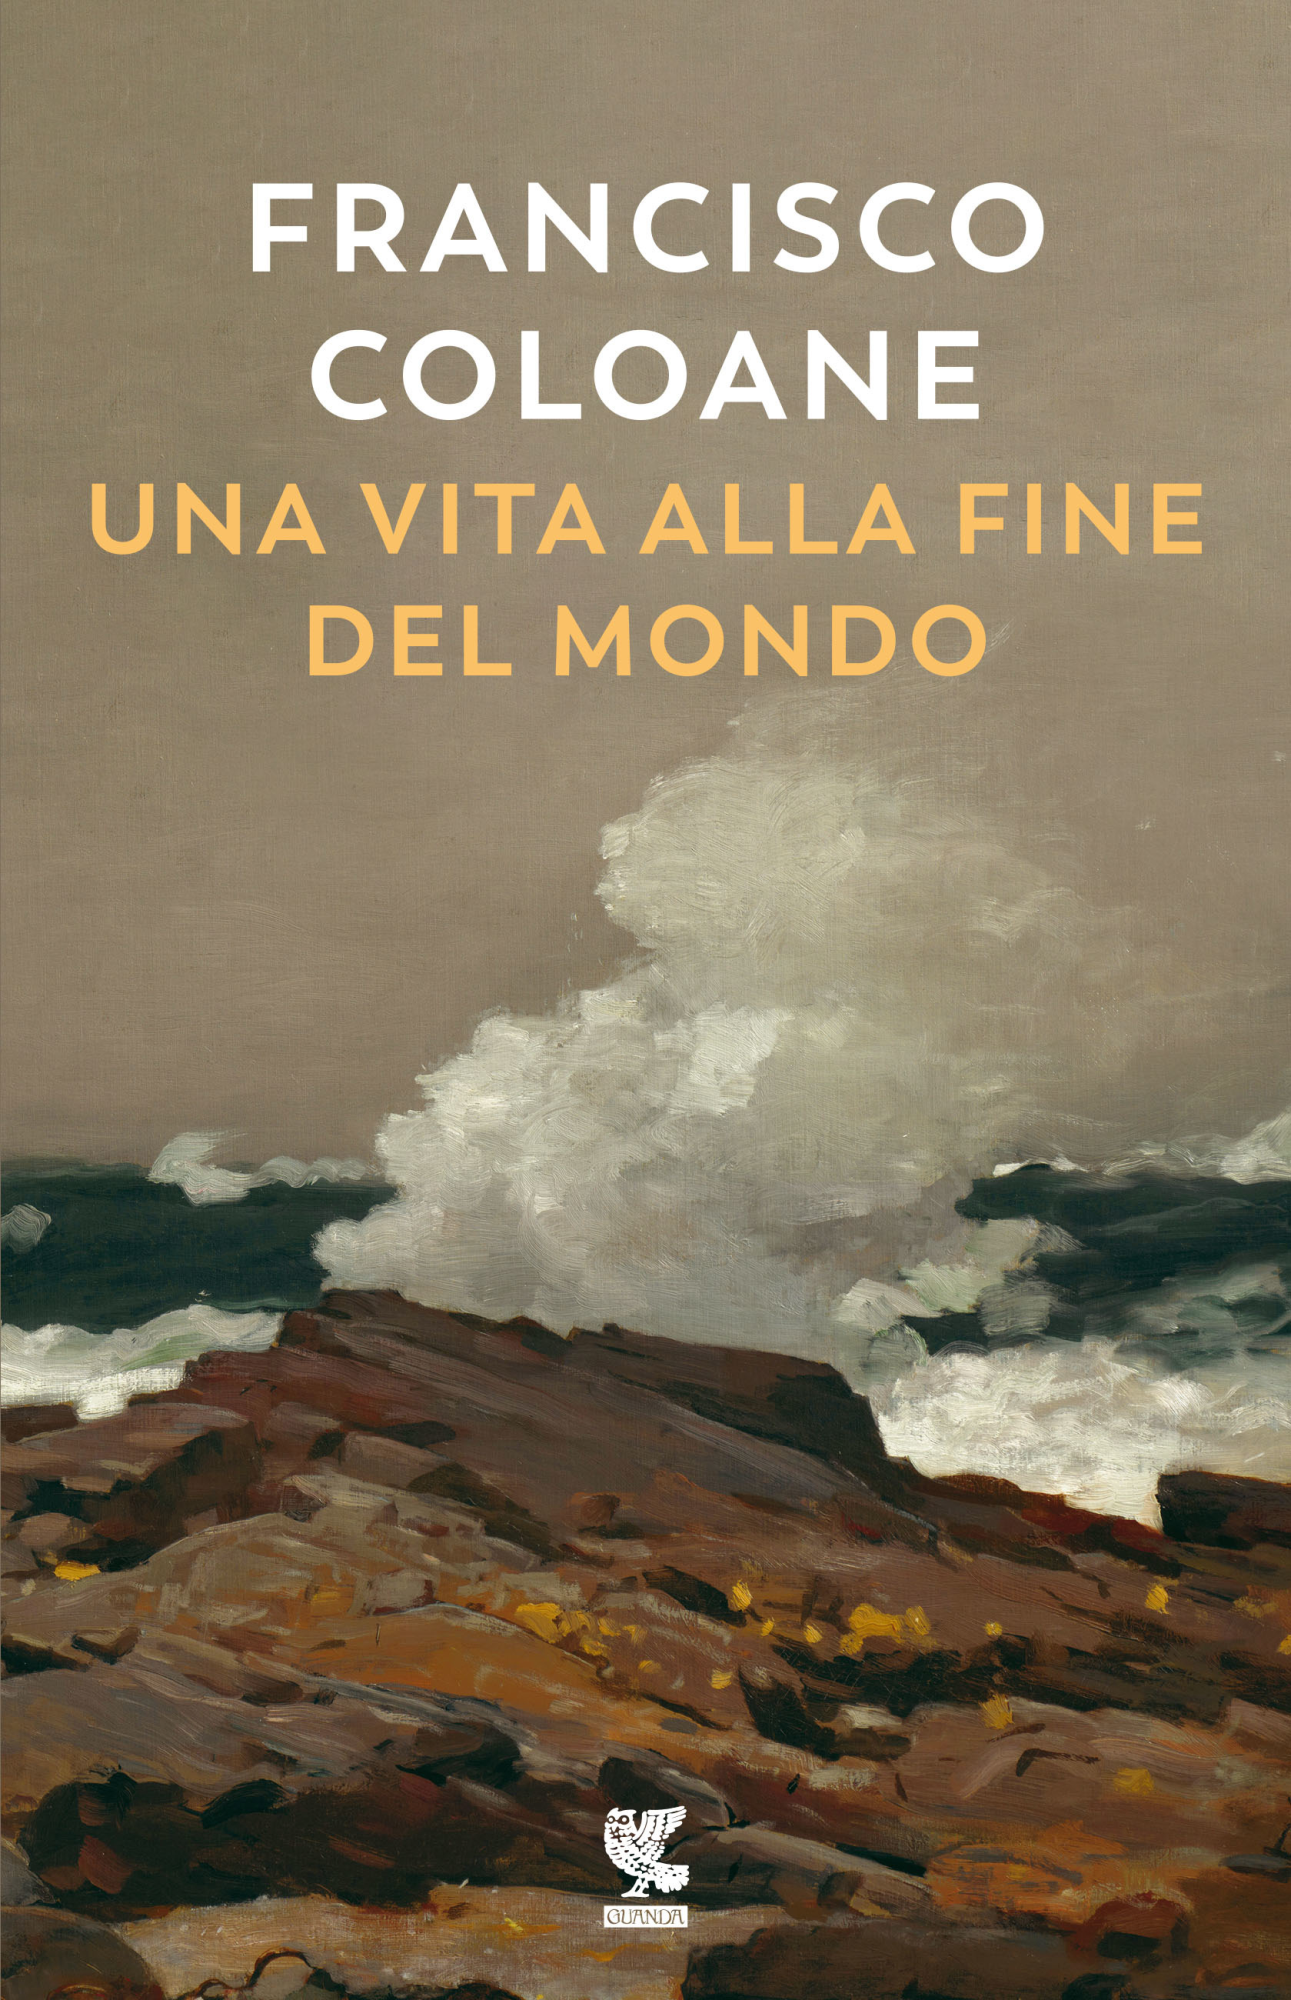 Libri Francisco Coloane - Una Vita Alla Fine Del Mondo NUOVO SIGILLATO, EDIZIONE DEL 14/01/2021 SUBITO DISPONIBILE